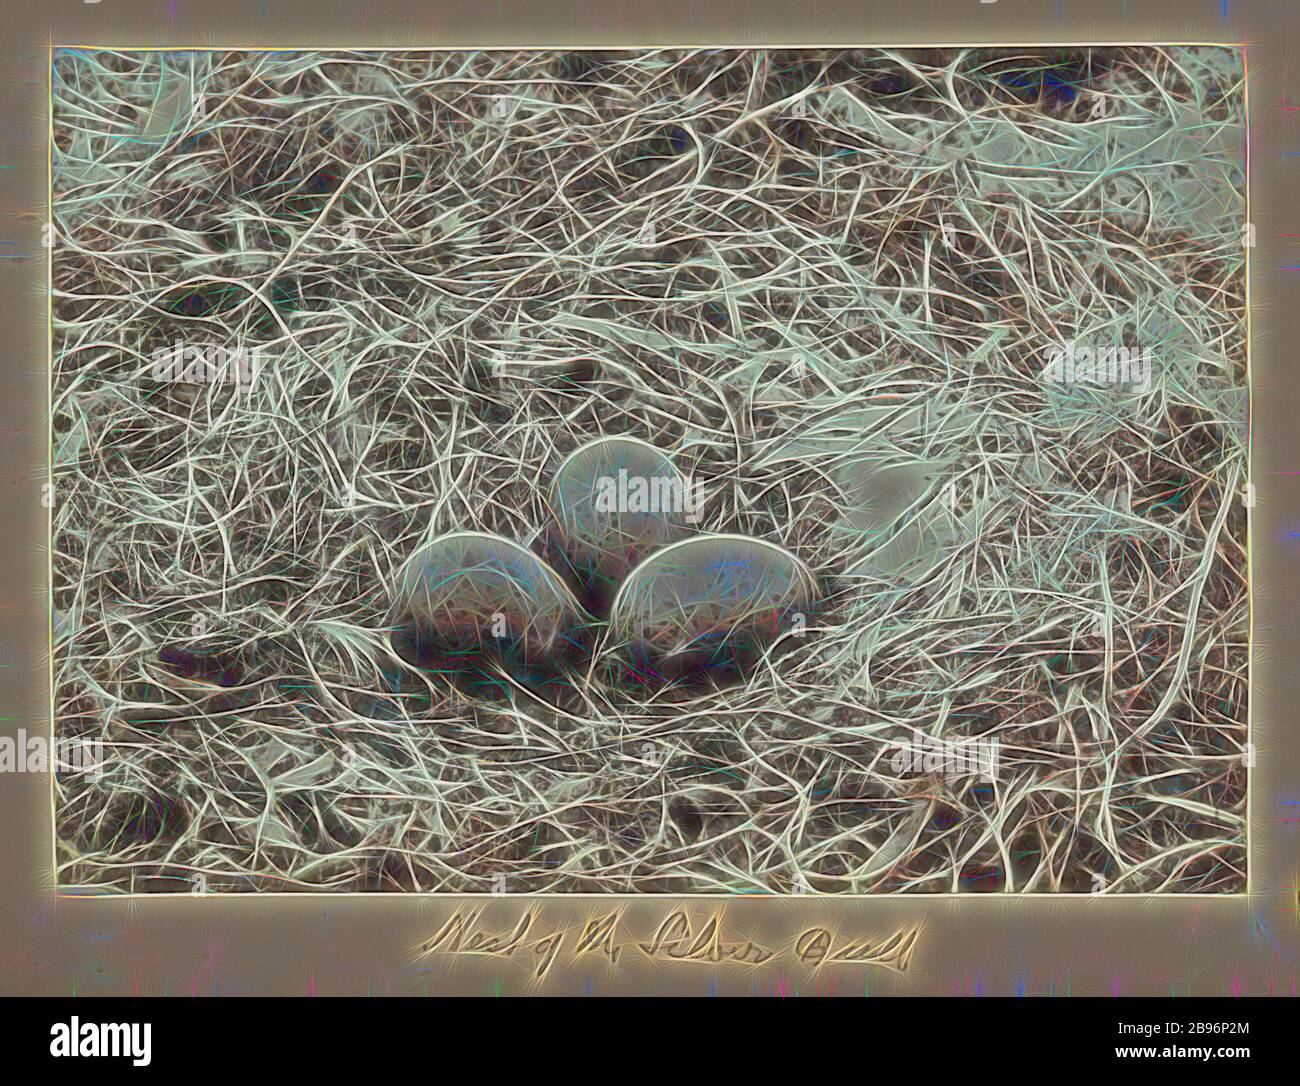 Photo - Nest of Silver Gull (Larus novaehollandiae), Groupe Furneaux, détroit de Bass, 1893, Une des soixante-neuf photographies en noir et blanc et en sépia dans un album lié [dont six sont lâches] prises par un J Campbell lors d'une expédition scientifique du Field Naturalistes Club of Victoria au groupe Furneaux, détroit de Bass, en 1893., repensée par Gibon, conception d'un brillant chaleureux et joyeux de la luminosité et des rayons de lumière radiance. L'art classique réinventé avec une touche moderne. La photographie inspirée du futurisme, embrassant l'énergie dynamique de la technologie moderne, du mouvement, de la vitesse et du révoluz Banque D'Images